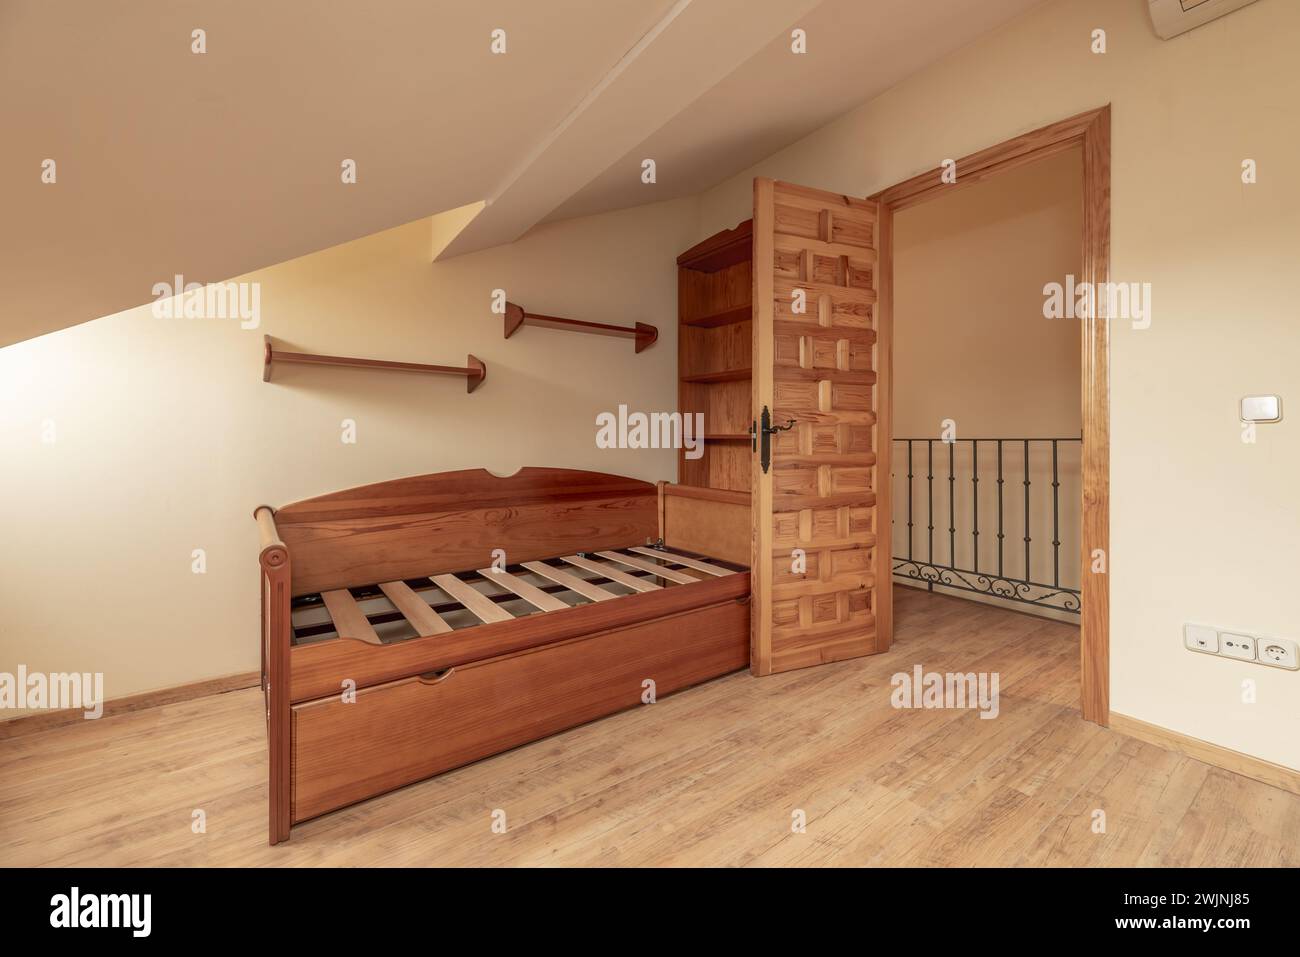 Camera da letto con decorazioni in legno castigliano, letti giovani senza materassi e soffitti inclinati Foto Stock